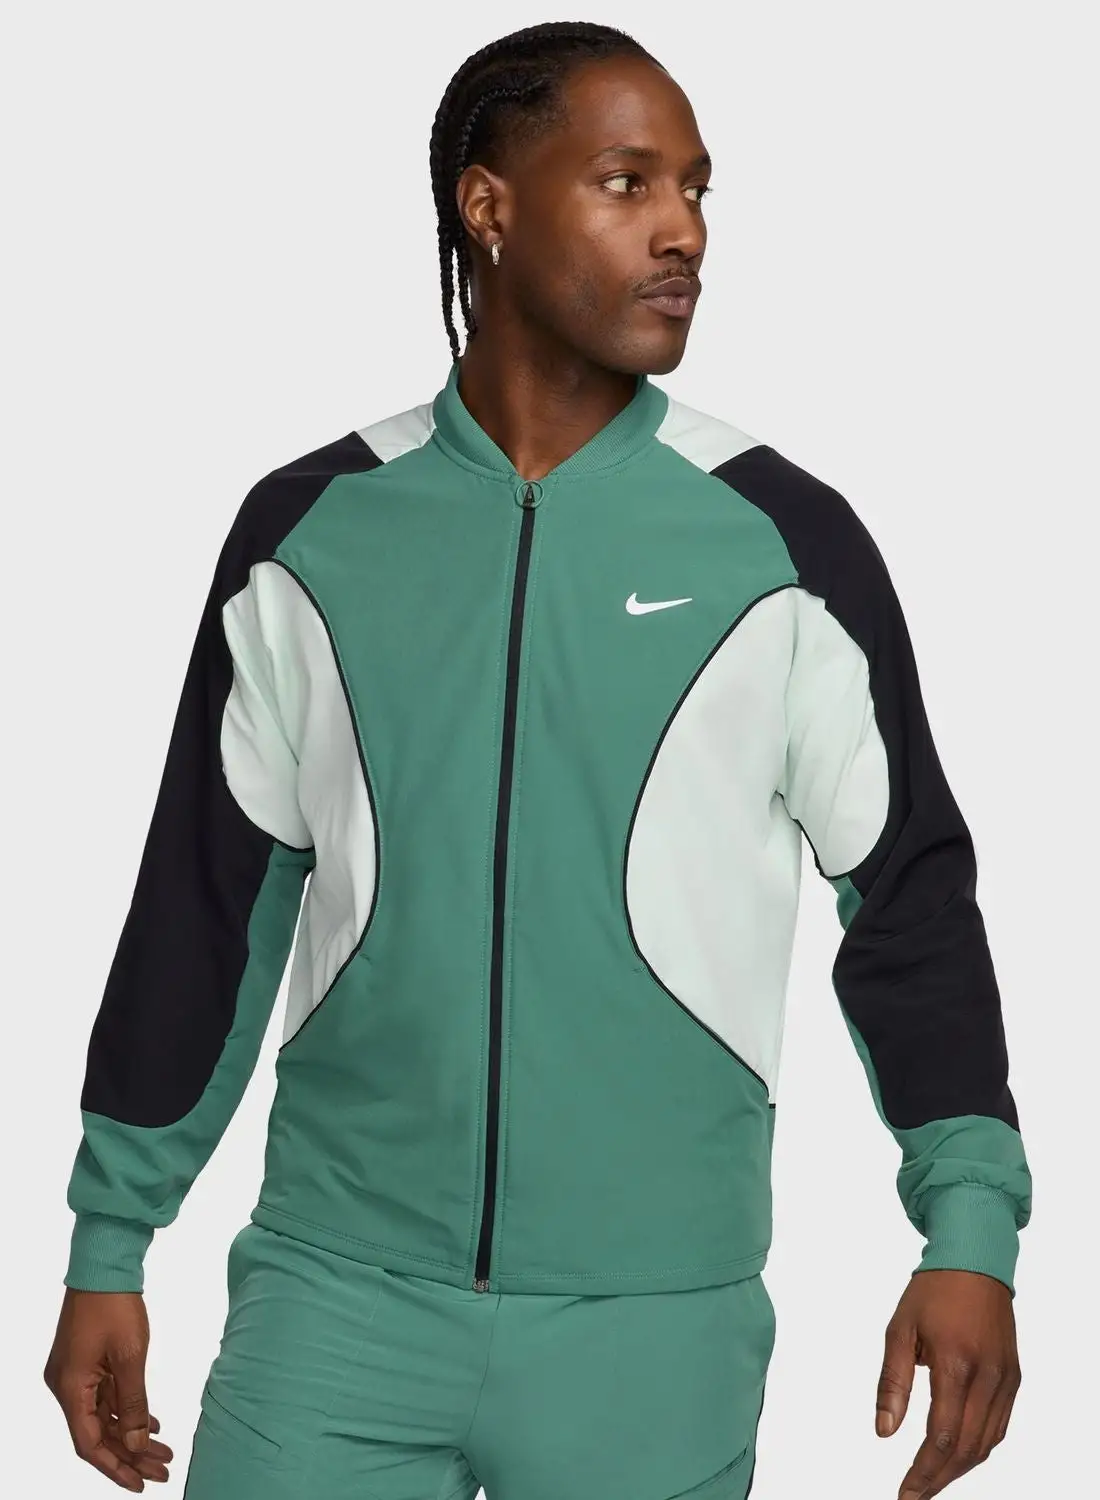 Nike Dri-Fit Advantage Jacket